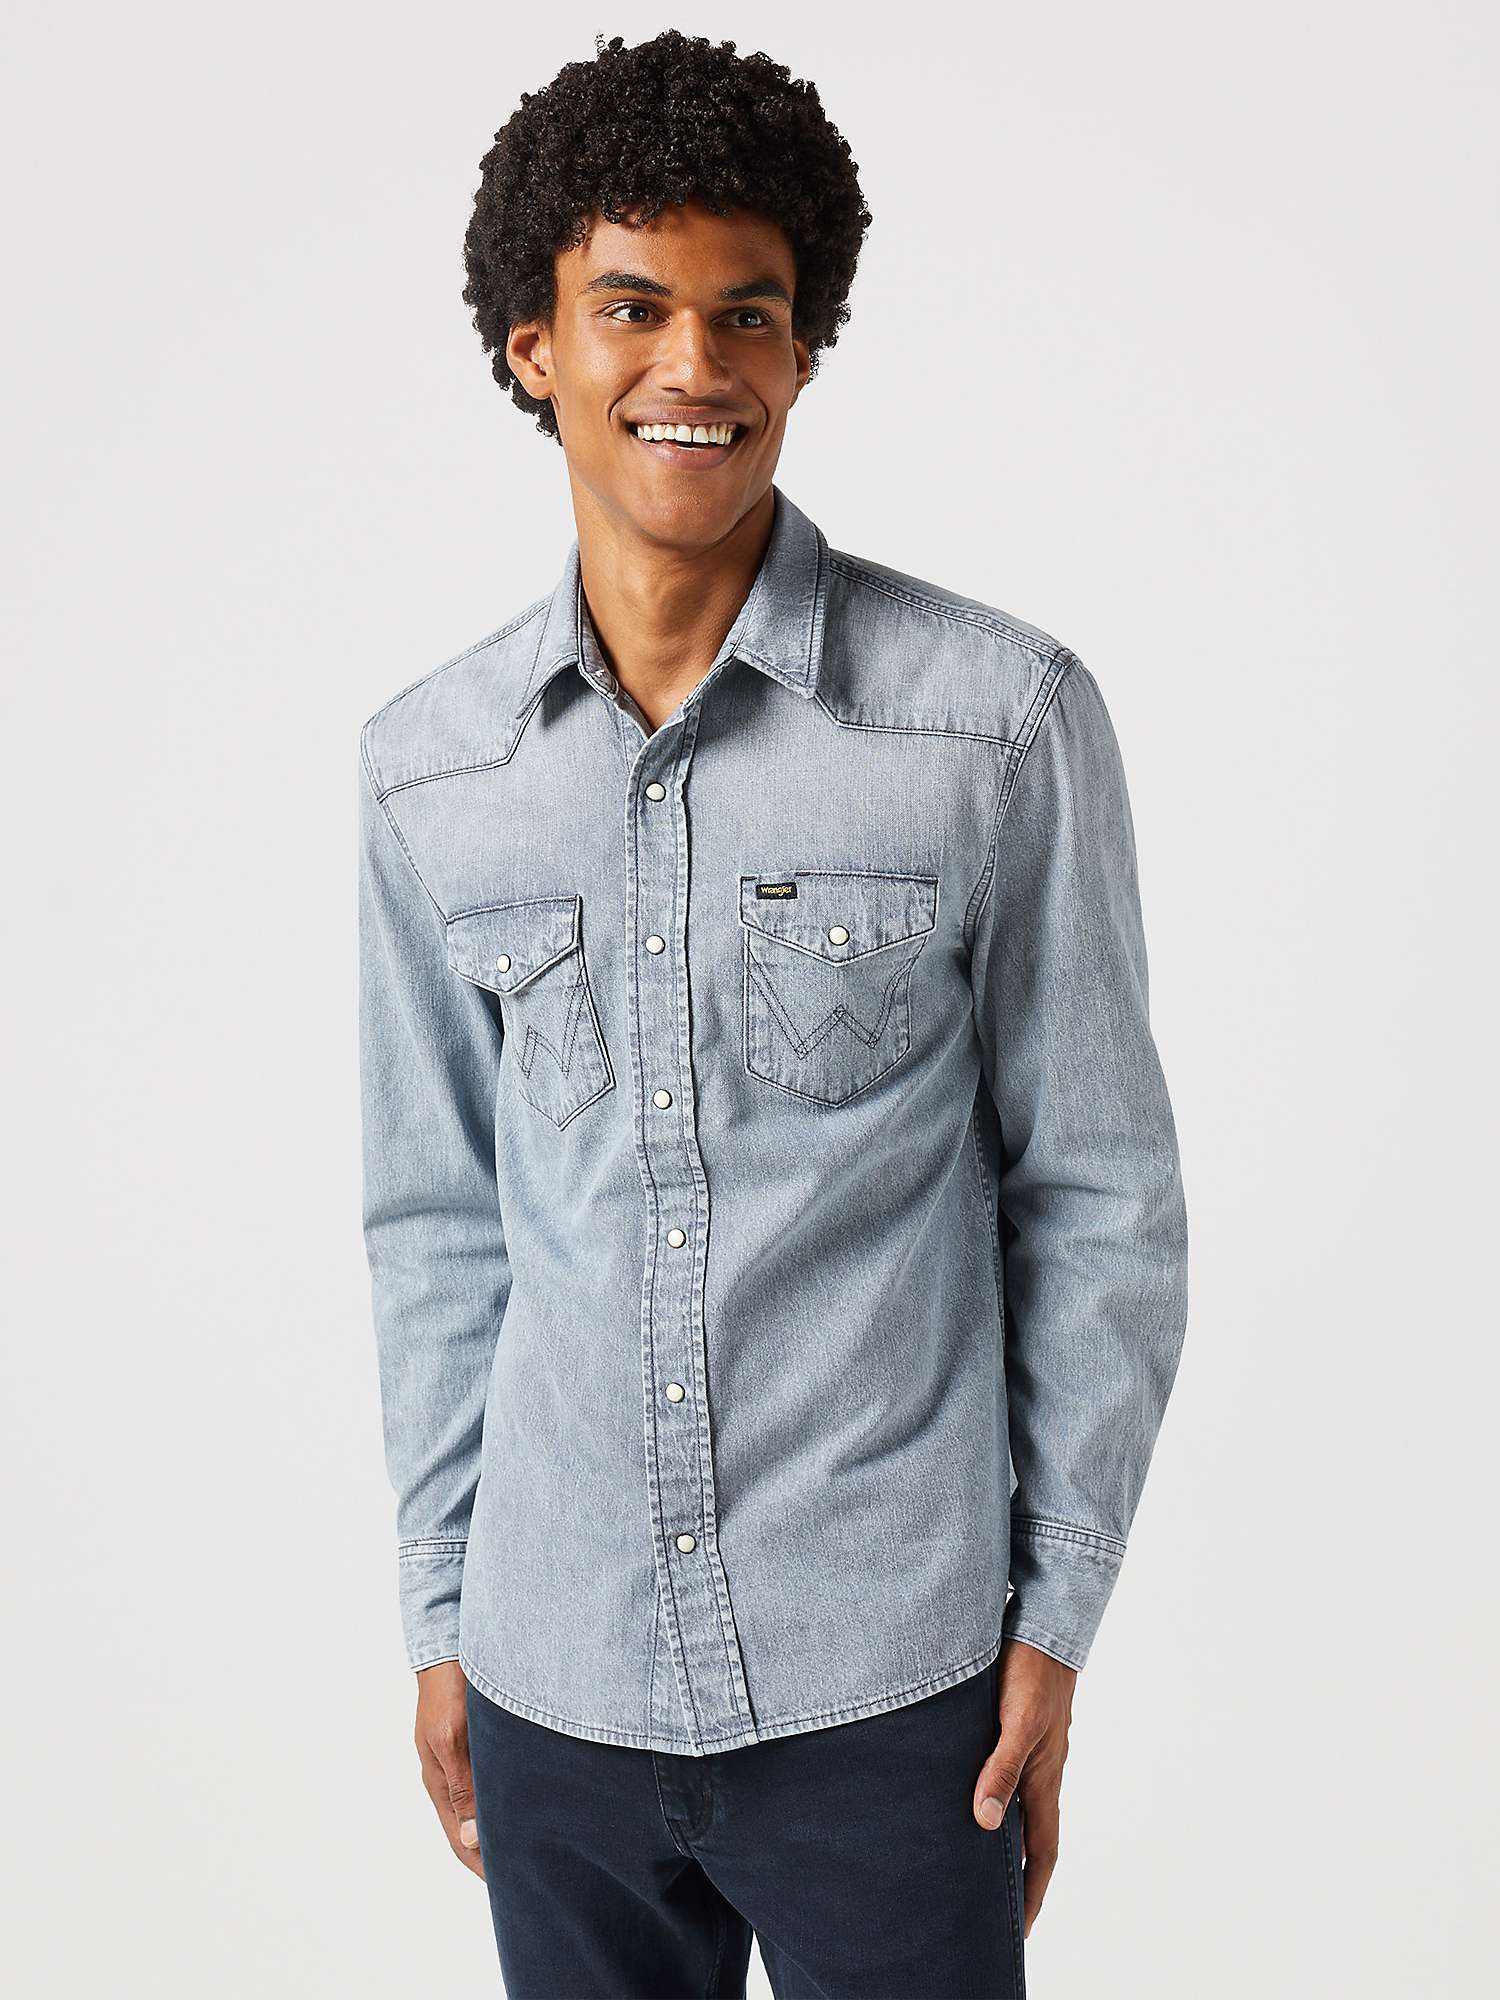 Buy Wrangler Cotton Regular Fit Denim Shirt, Black Jack Online at johnlewis.com